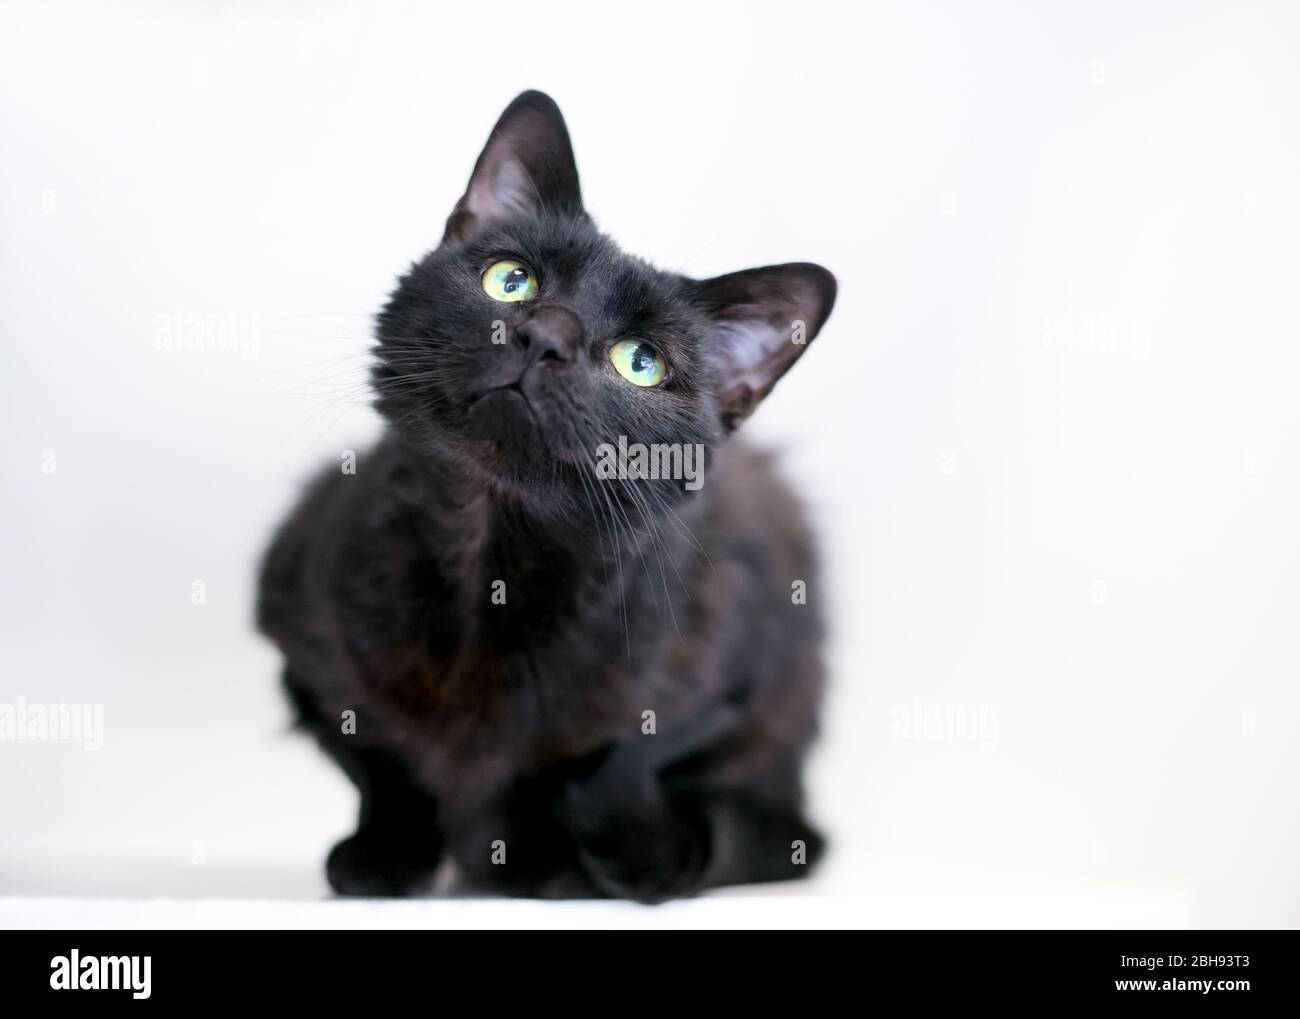 Un chat de shorthair domestique noir assis dans une position crouchée et inclinant sa tête avec une expression curieuse Banque D'Images